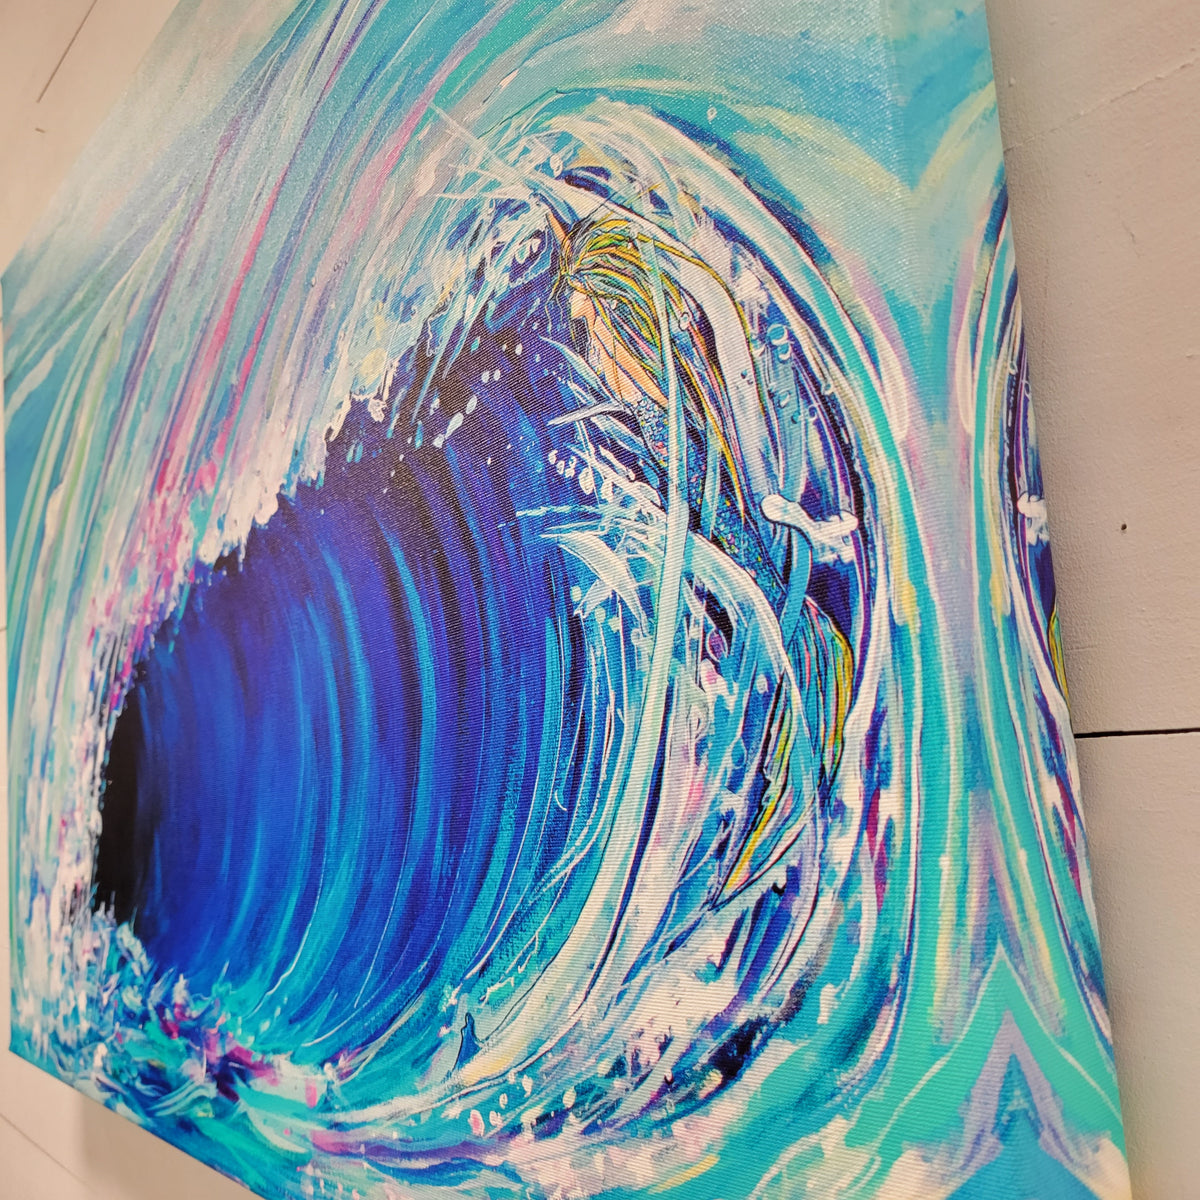 Wave & Mermaid Print on Canvas